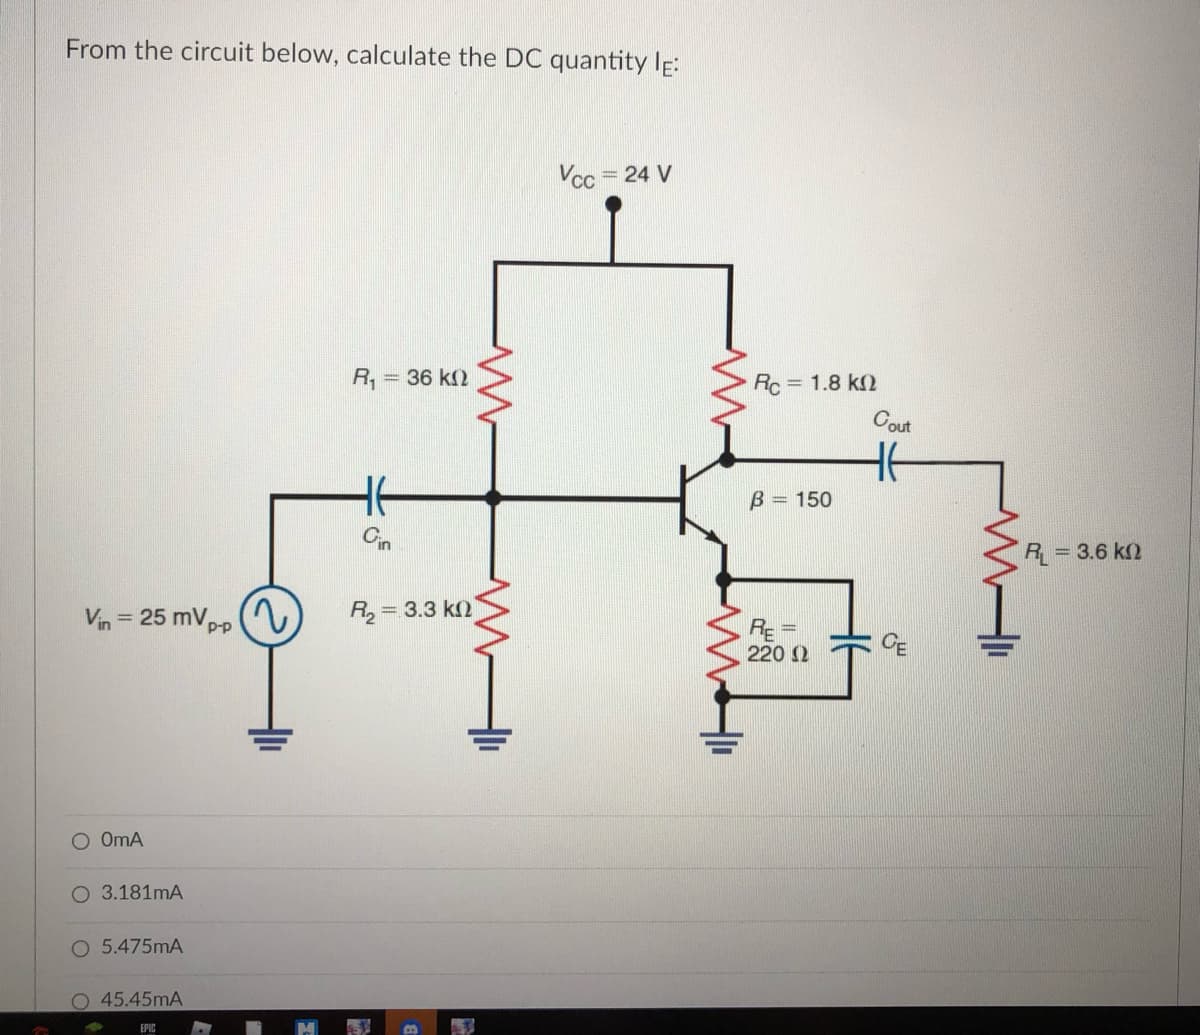 From the circuit below, calculate the DC quantity IE:
Vcc
= 24 V
R,
= 36 k2
Rc = 1.8 k
Cout
B = 150
R = 3.6 k2
Vin = 25 mVpp (V
R, = 3.3 k)
%3D
RE =
220 2
O OmA
O 3.181mA
O 5.475mA
45.45mA
EPIC
